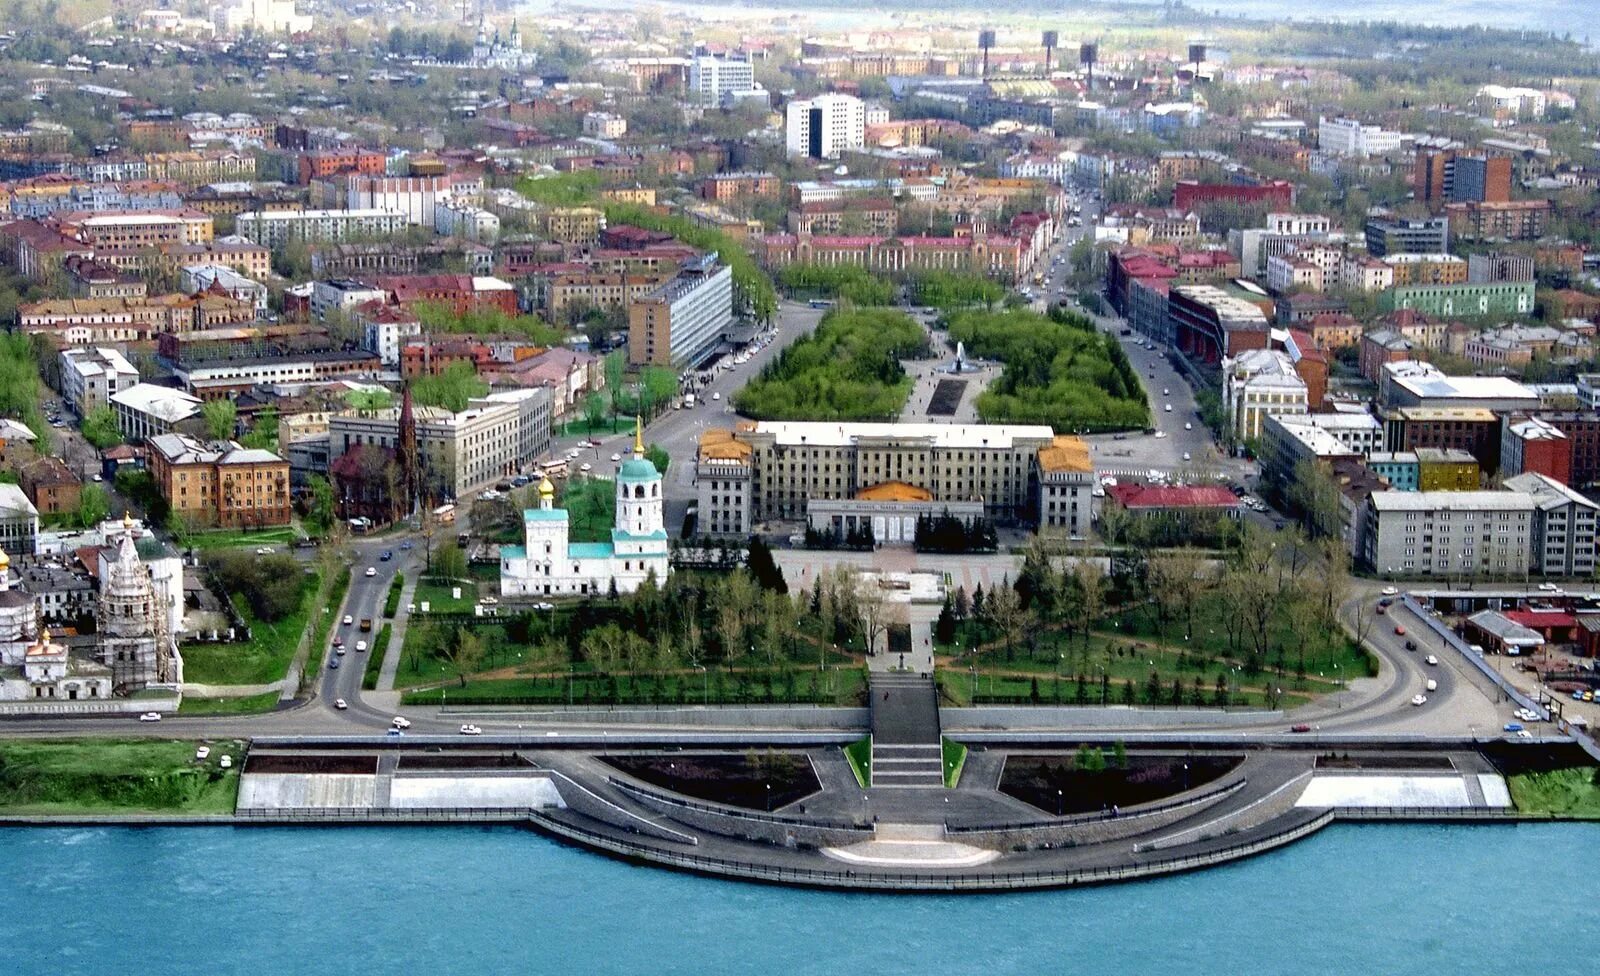 Иркутск центр города. Иркутск административный центр. Центр Иркутска с высоты. Иркутск с высоты птичьего полета.